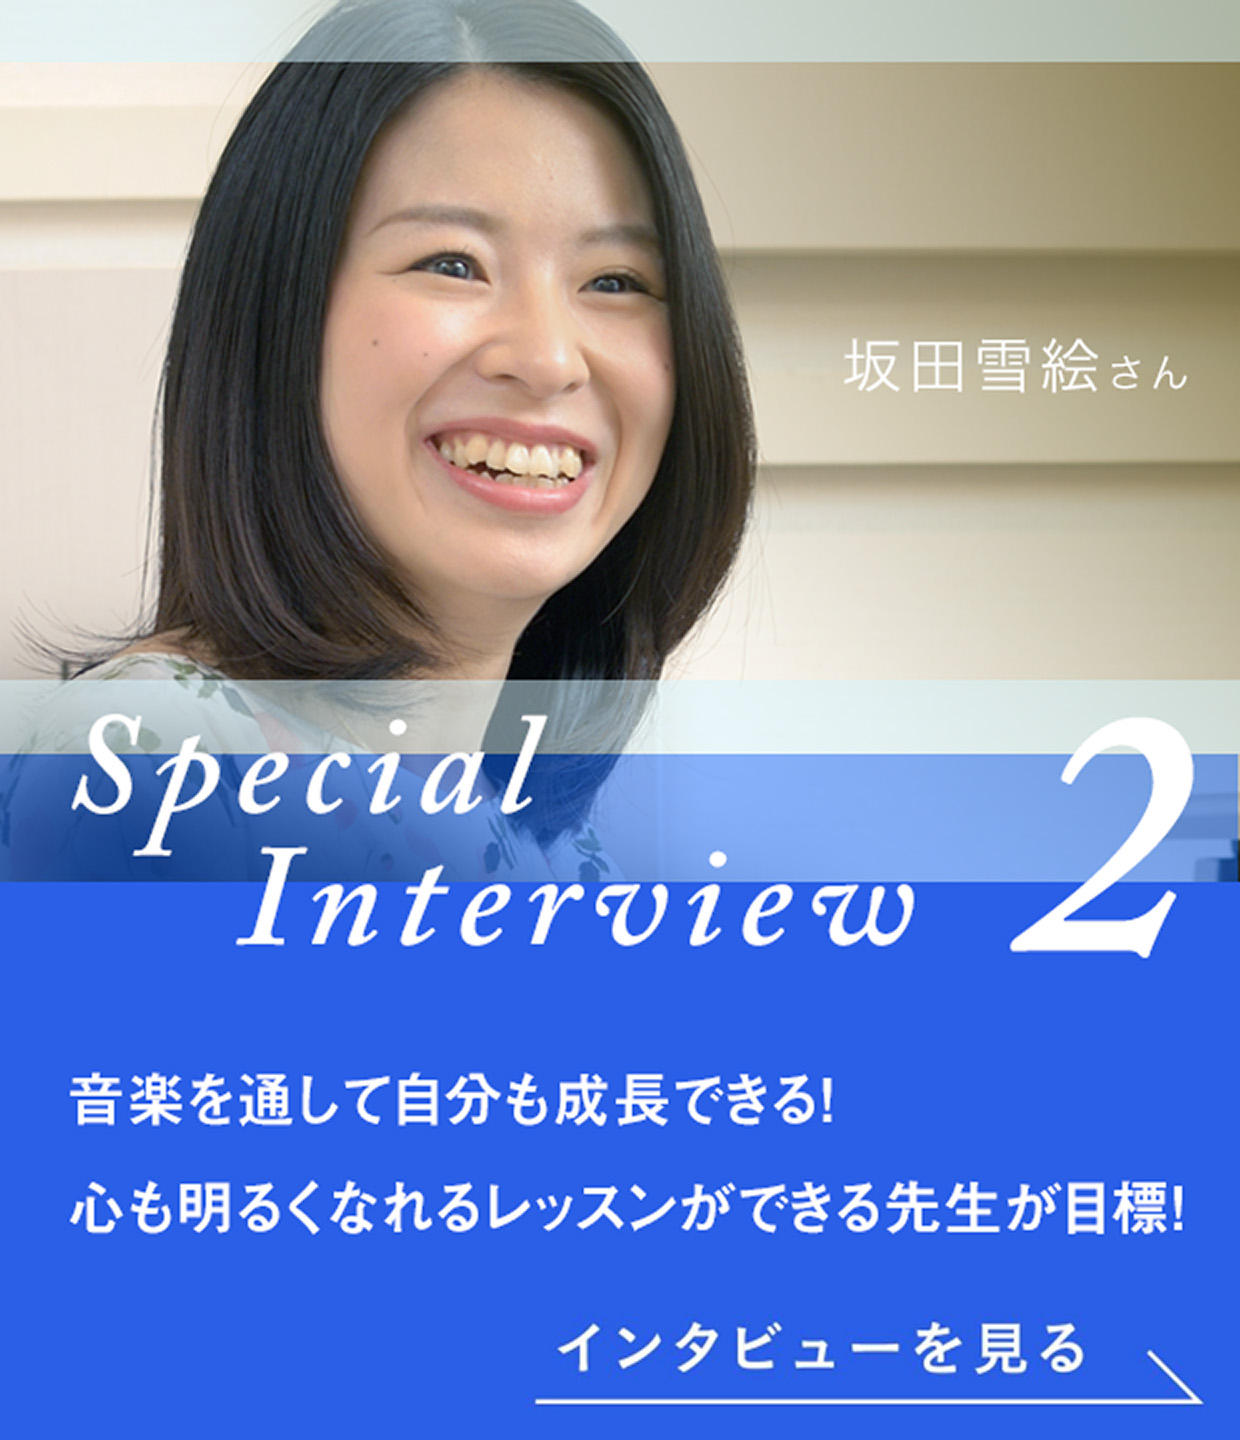 Special Interview2 沖田夏実さん ヤマハの講師になりたい。幼い頃にい抱いた夢、叶えました。インタビューを見る